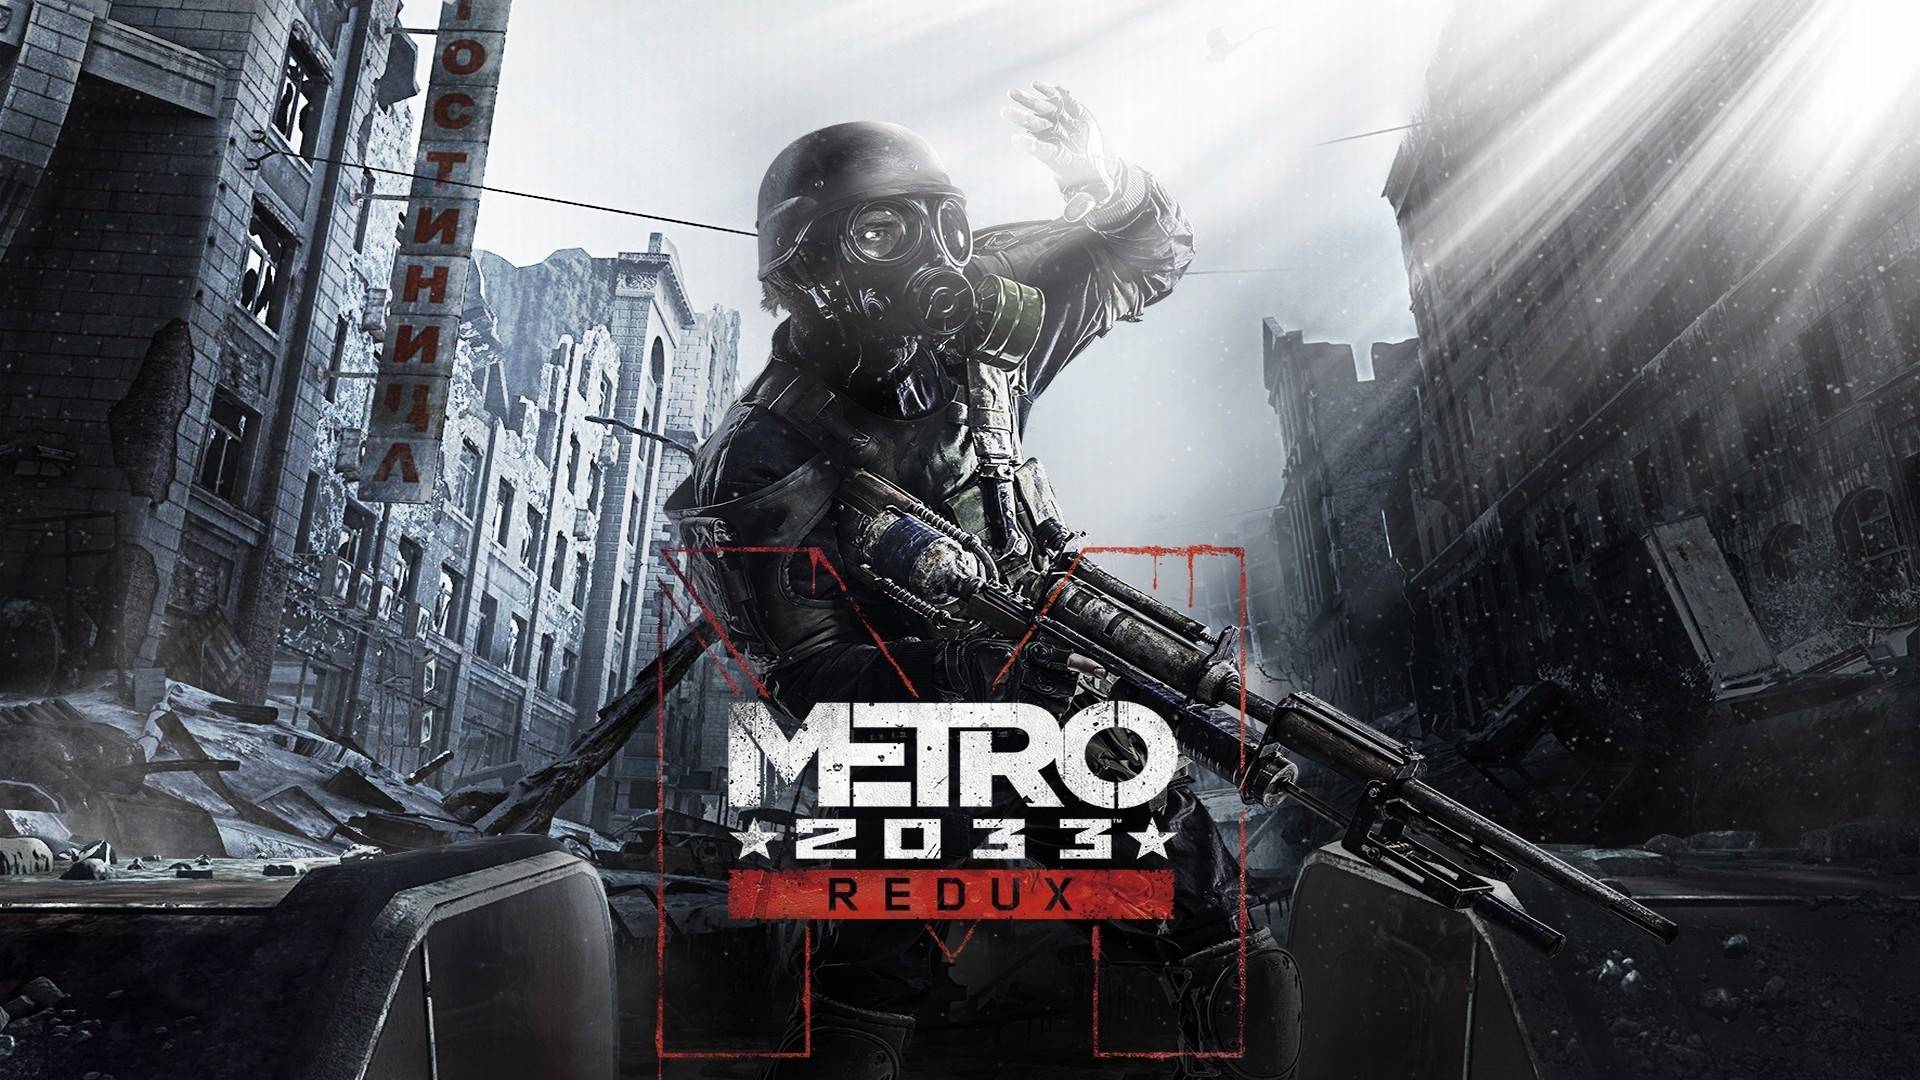 Стрим|Metro 2033 Redux | Прохождение |Часть 8|?Ready to Game?